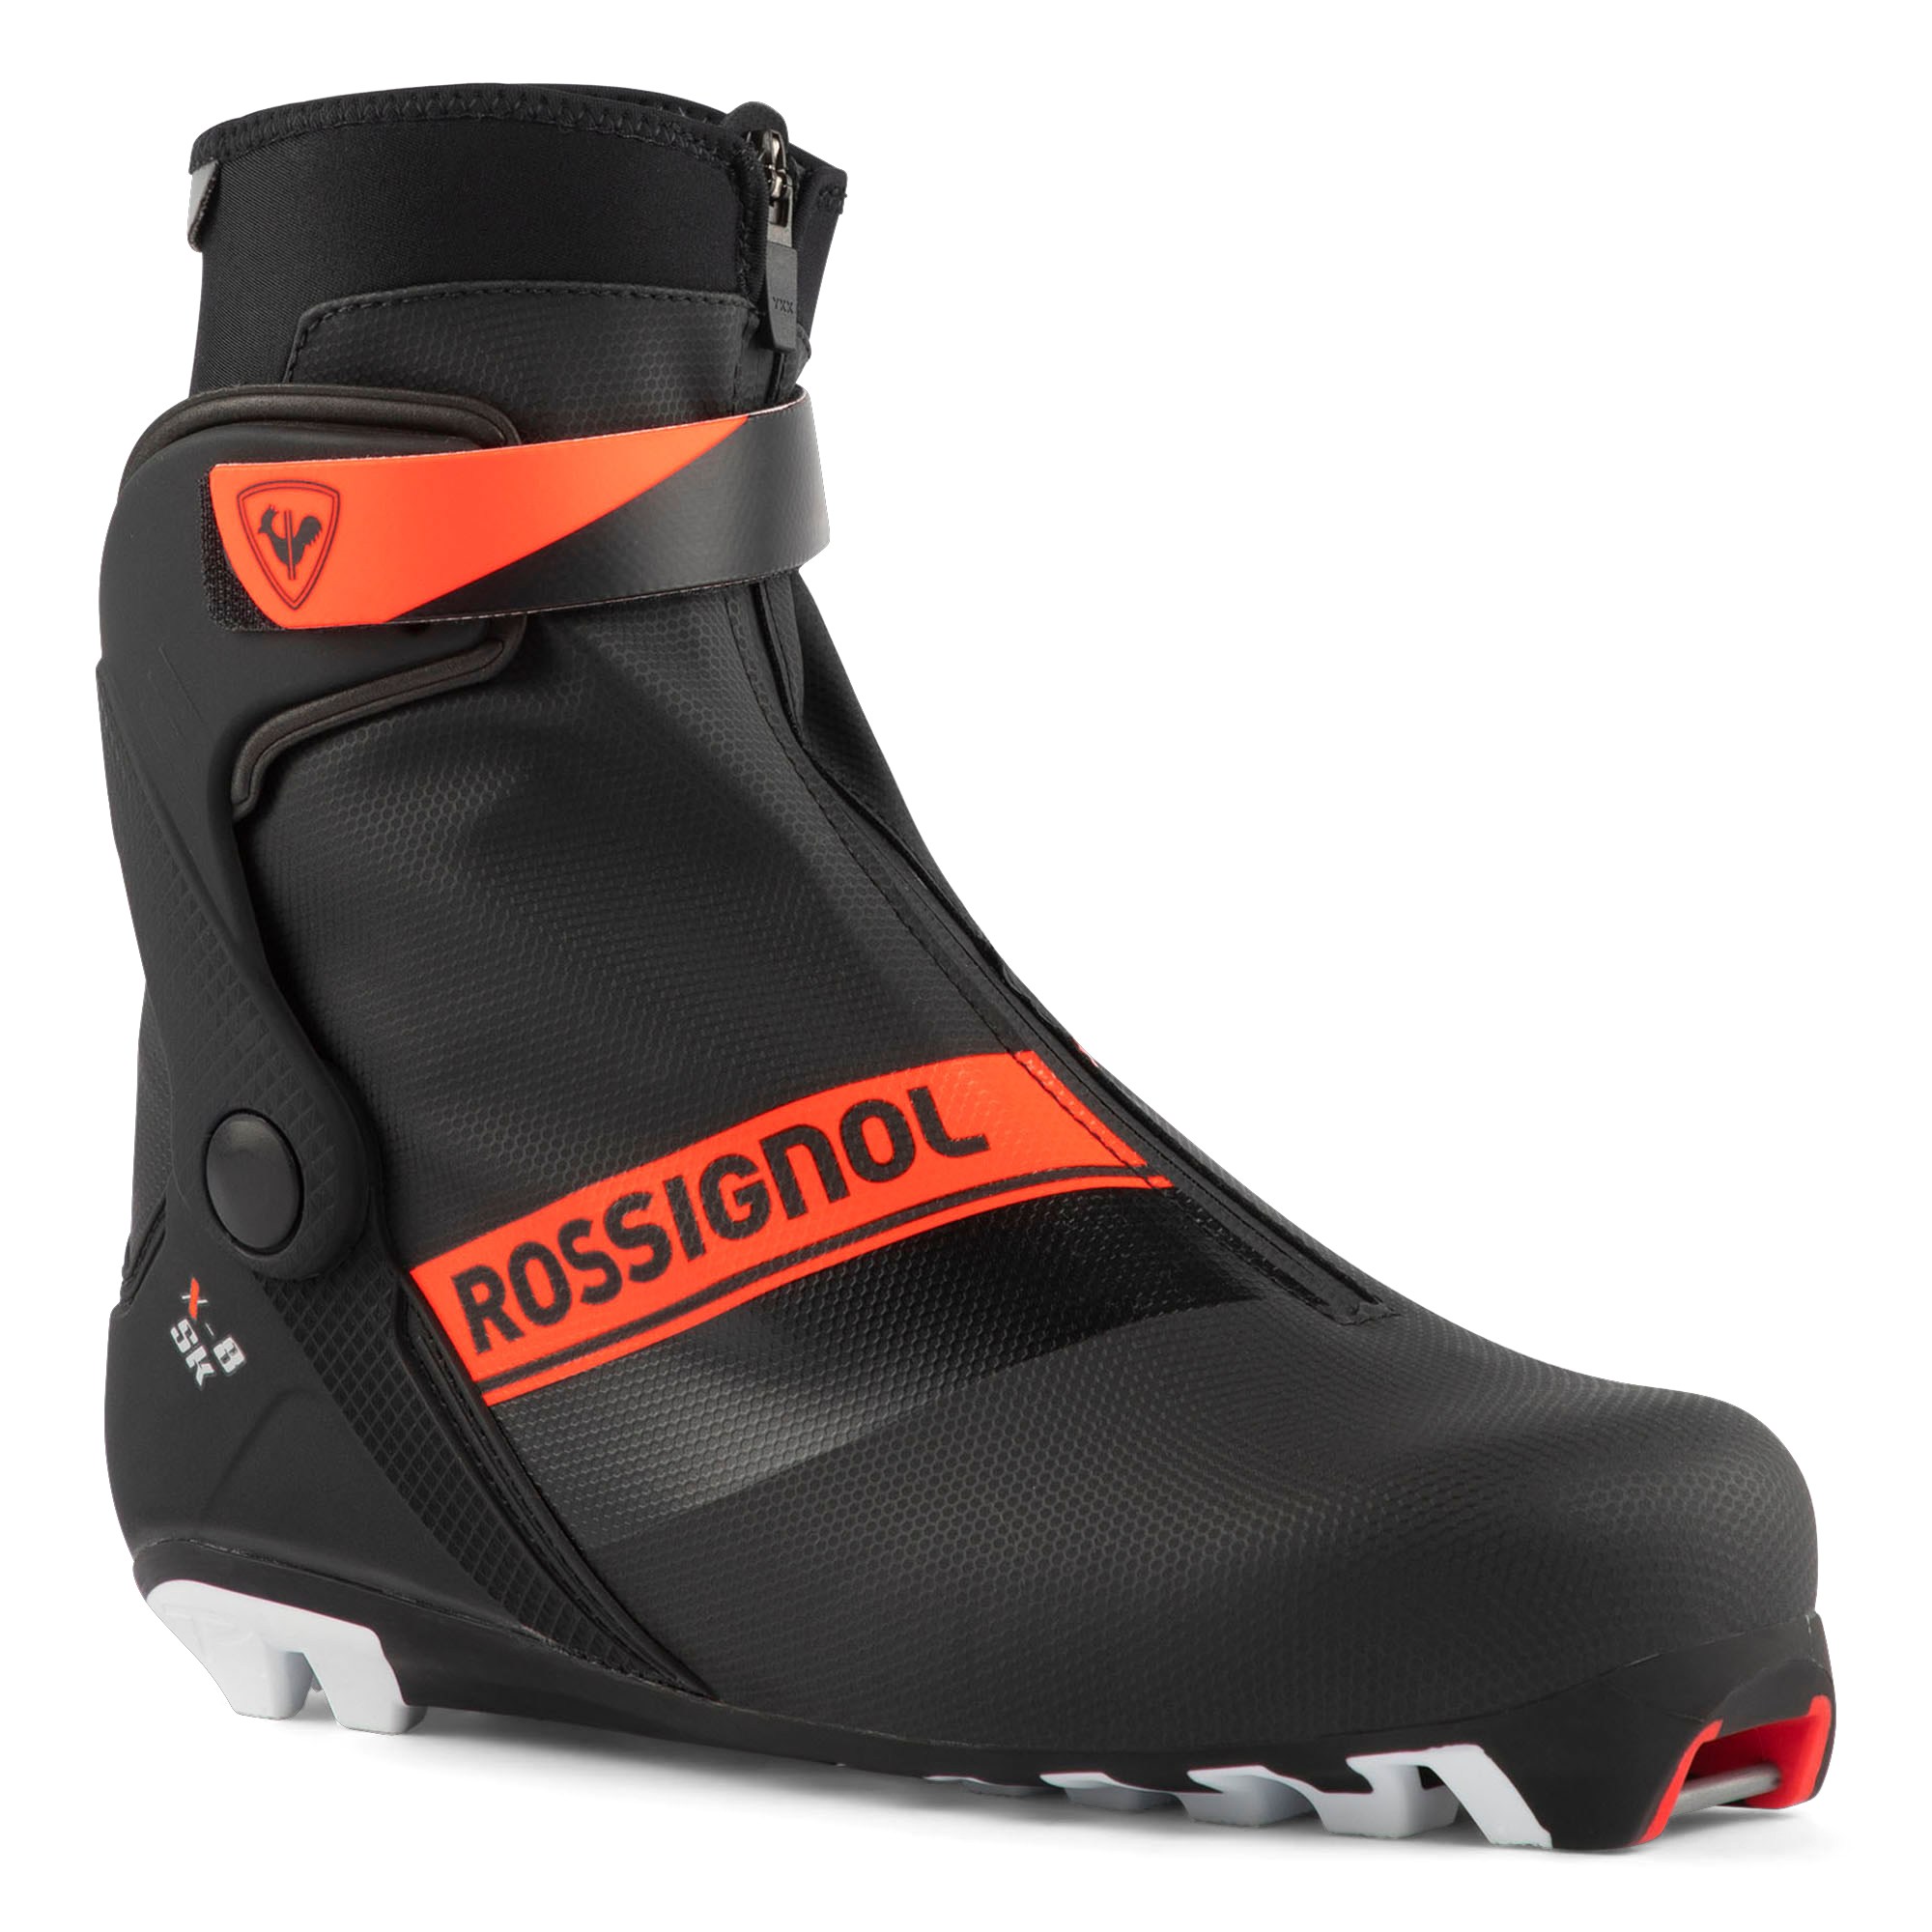 Лыжные ботинки для скейтбординга X-8 — мужские Rossignol, черный